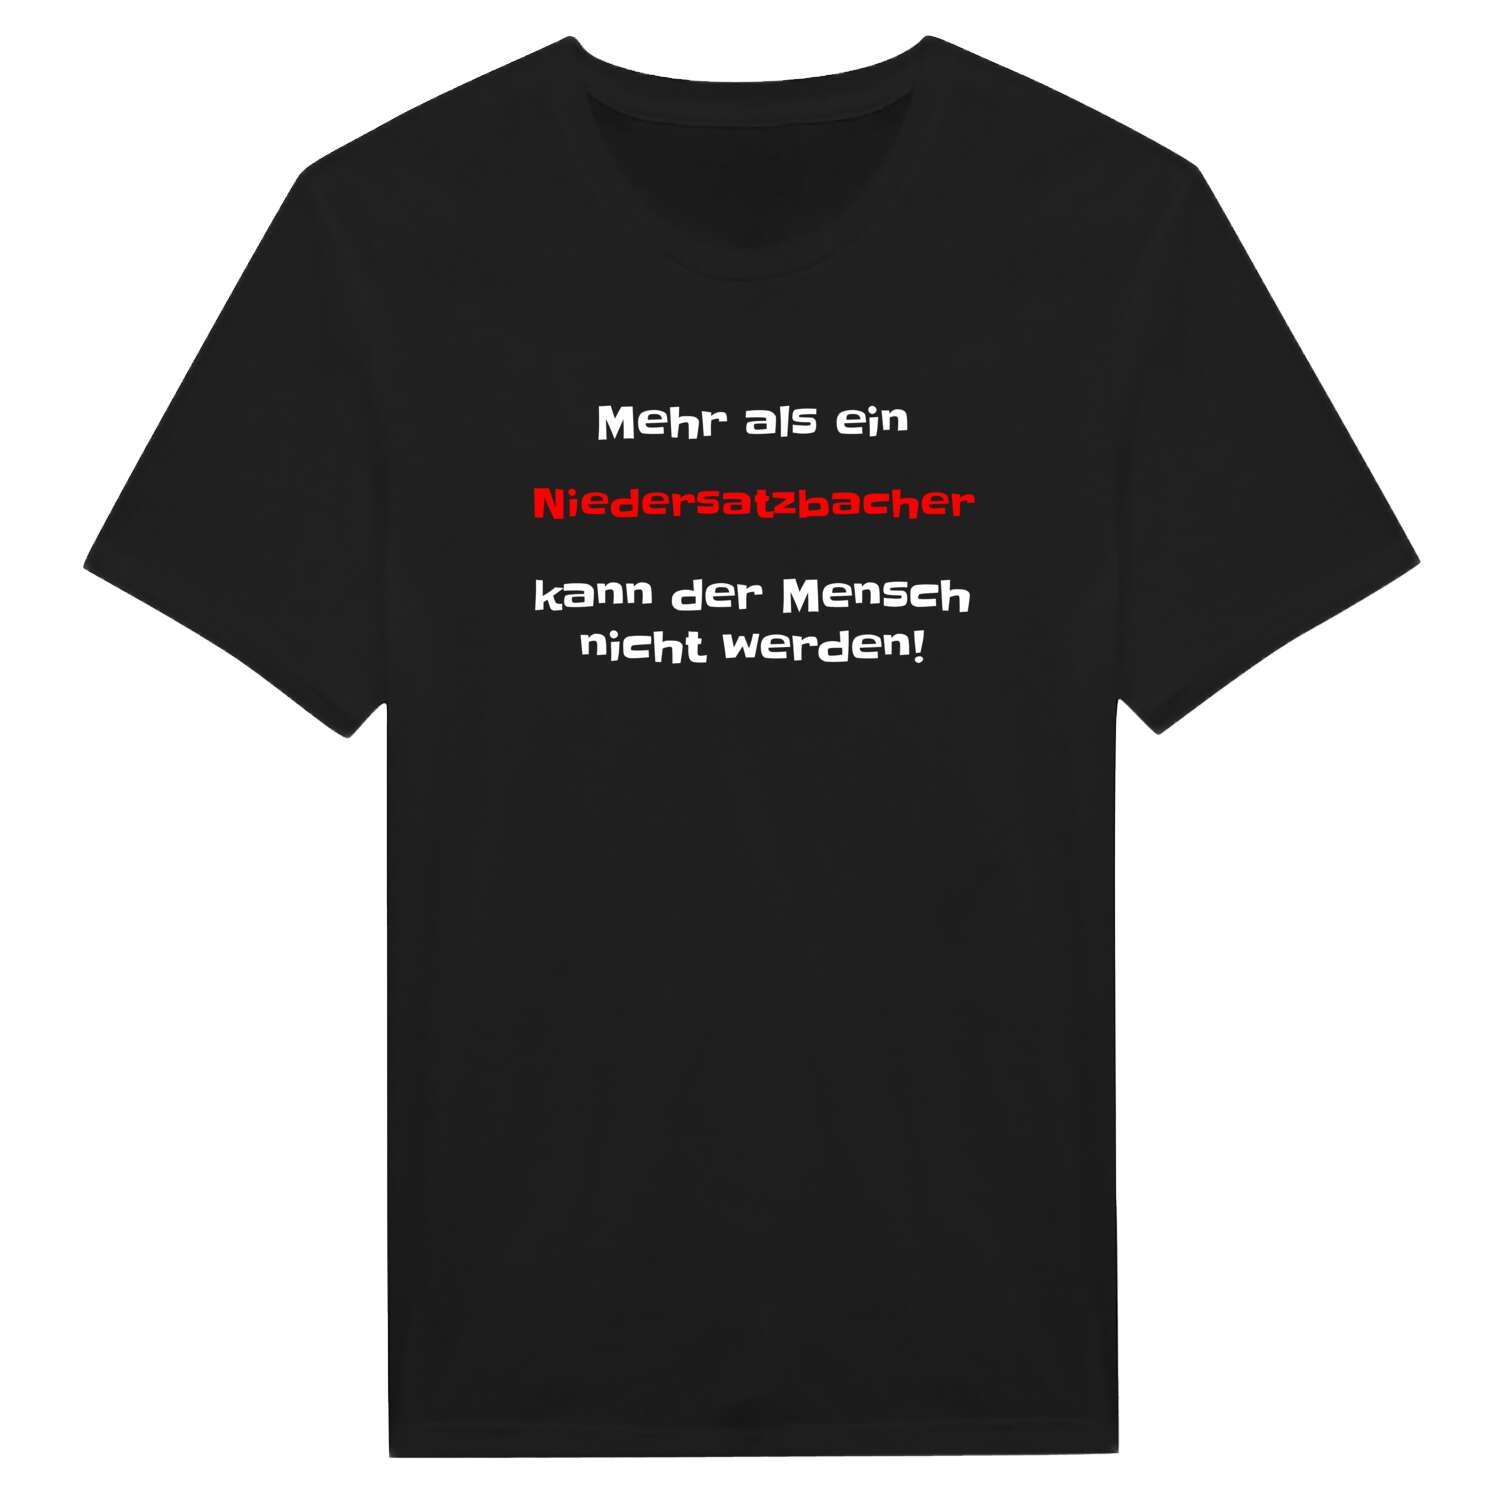 Niedersatzbach T-Shirt »Mehr als ein«